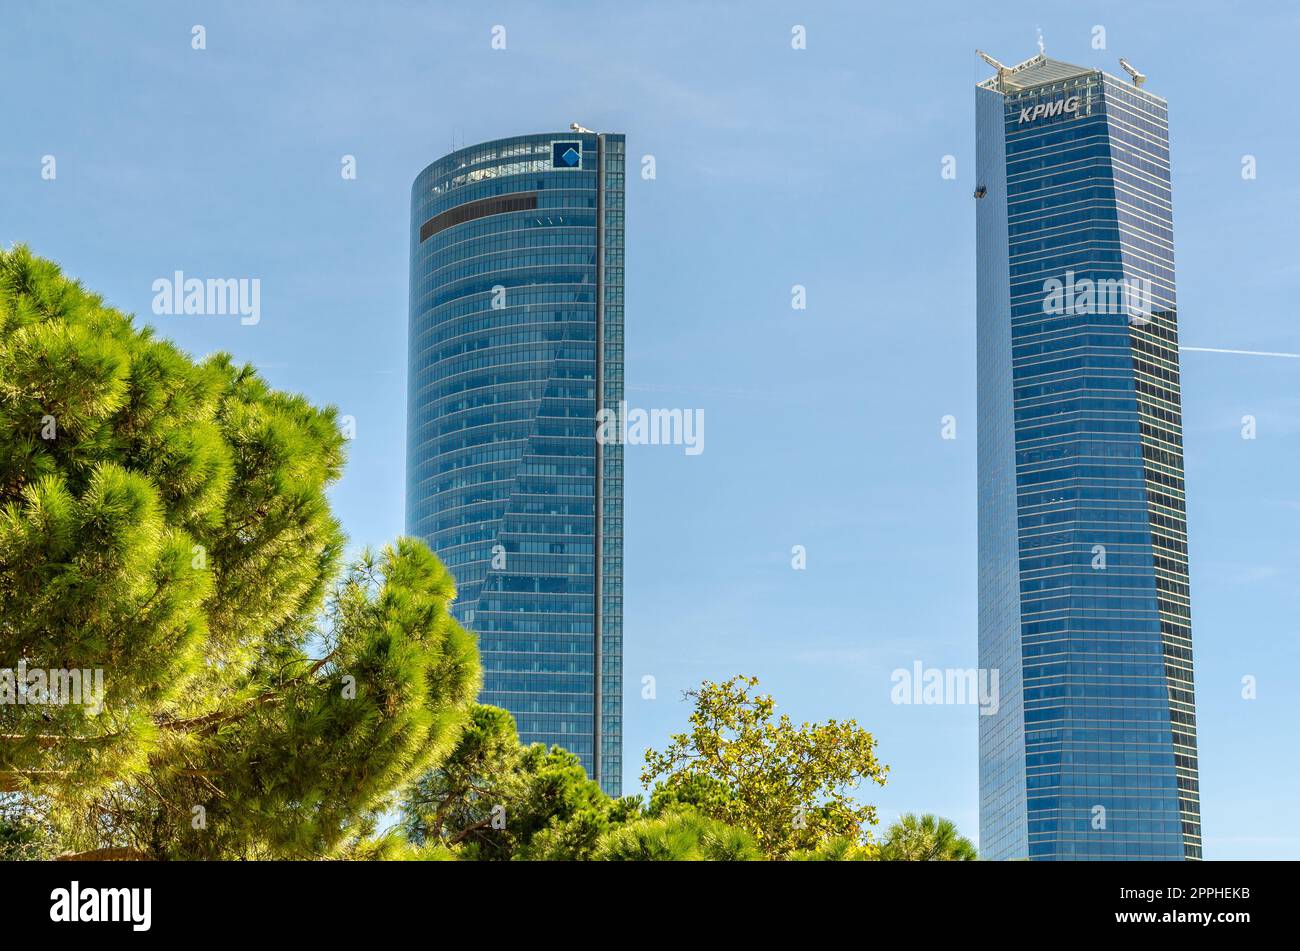 MADRID, SPAGNA - 6 OTTOBRE 2021: Vista dei grattacieli moderni che fanno parte della zona commerciale Cuatro Torres a Madrid, Spagna Foto Stock